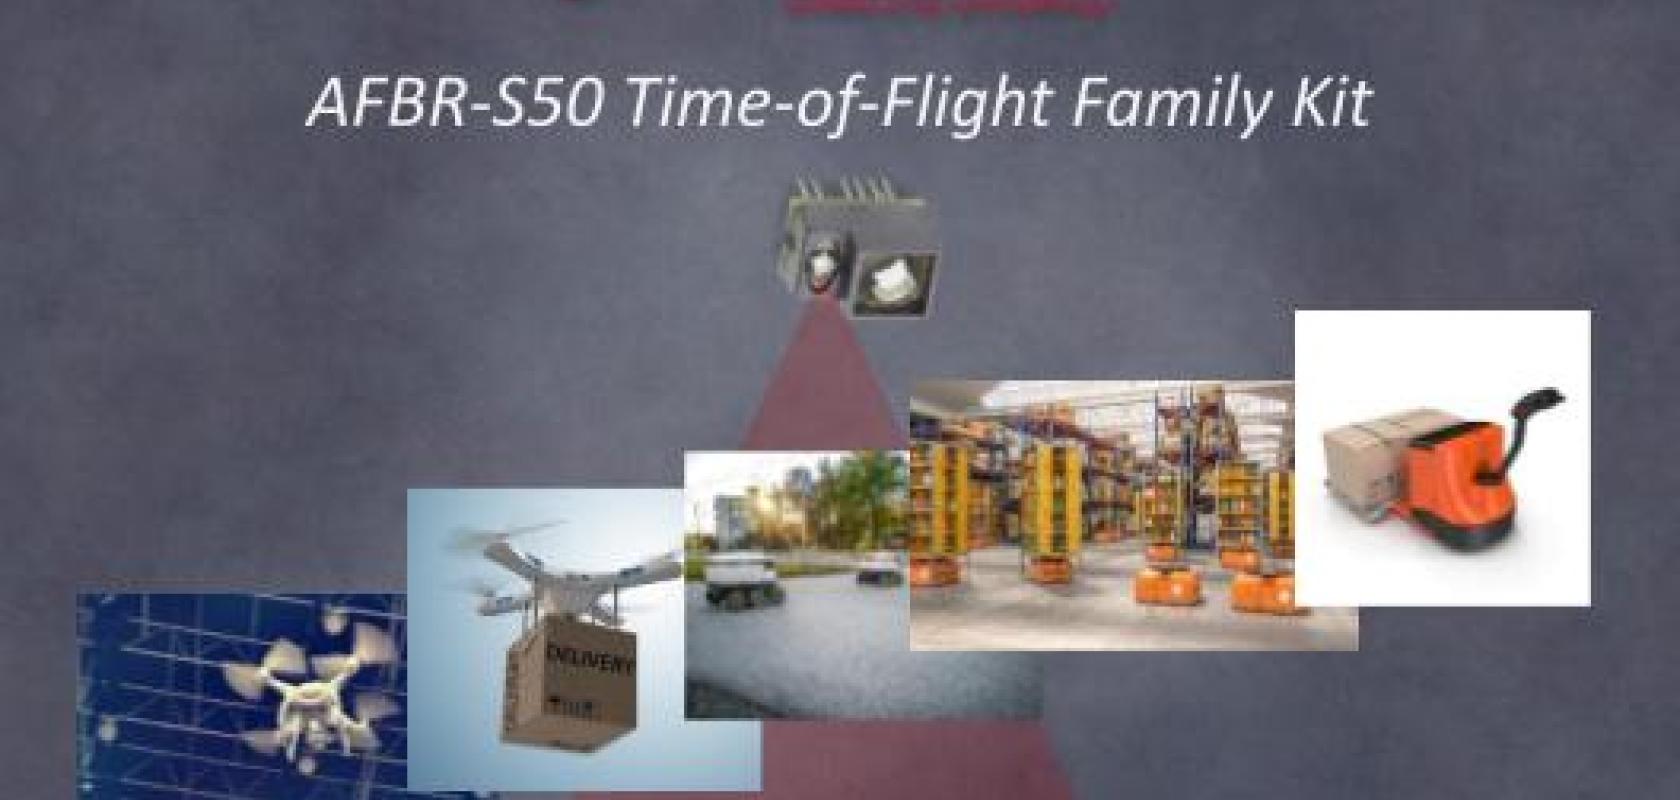 The Broadcom® AFBR-S50 TOF-sensor family